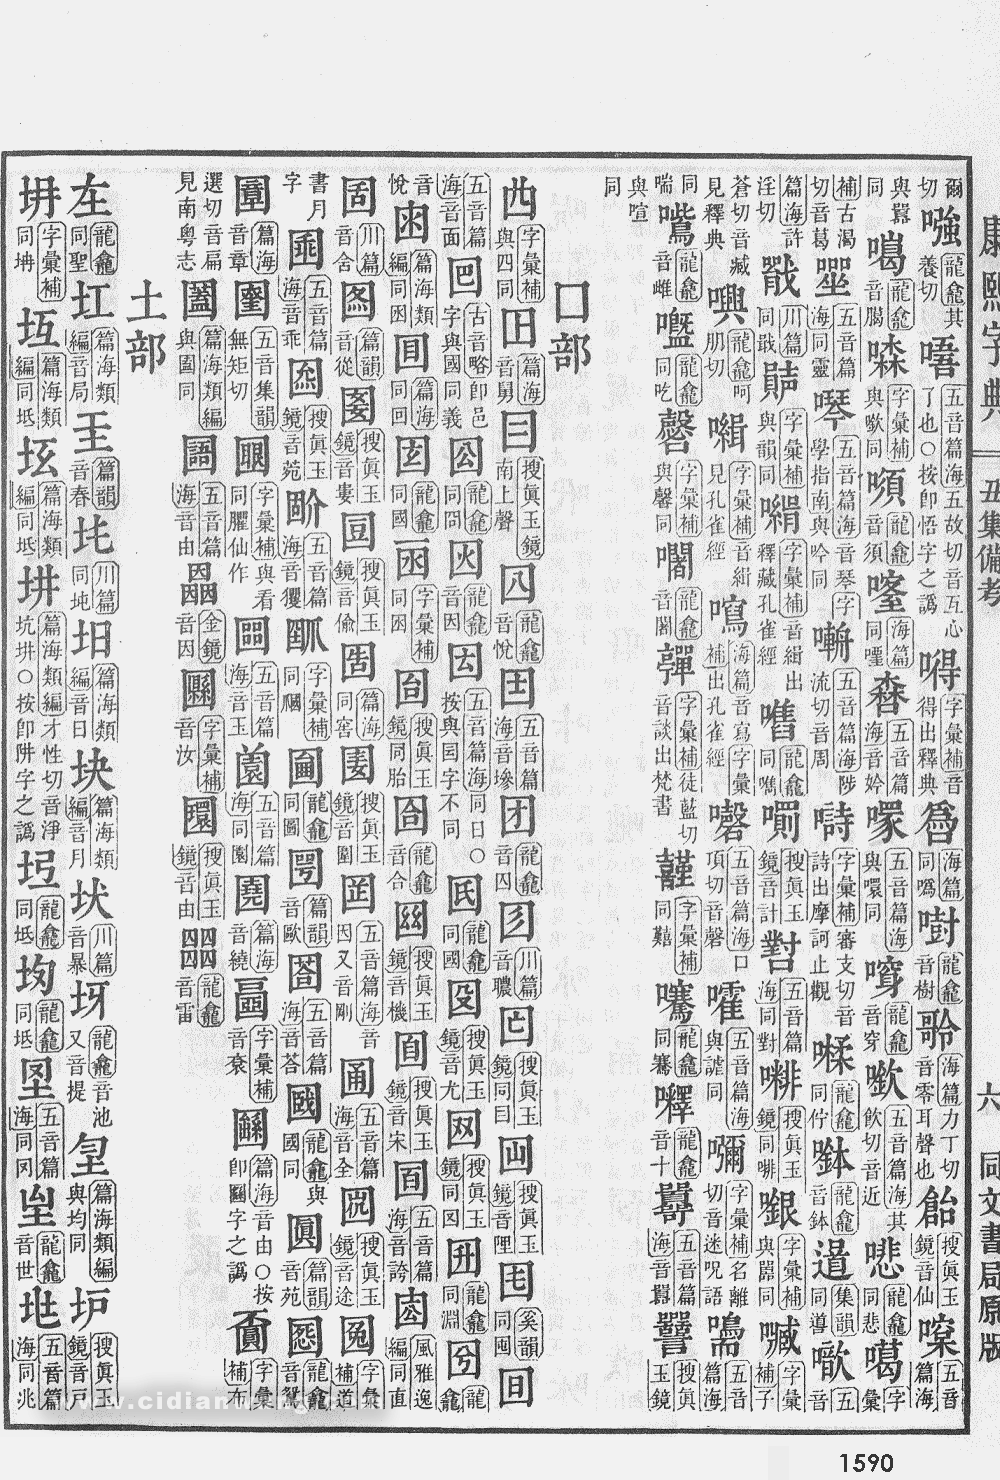 康熙字典掃描版第1590頁